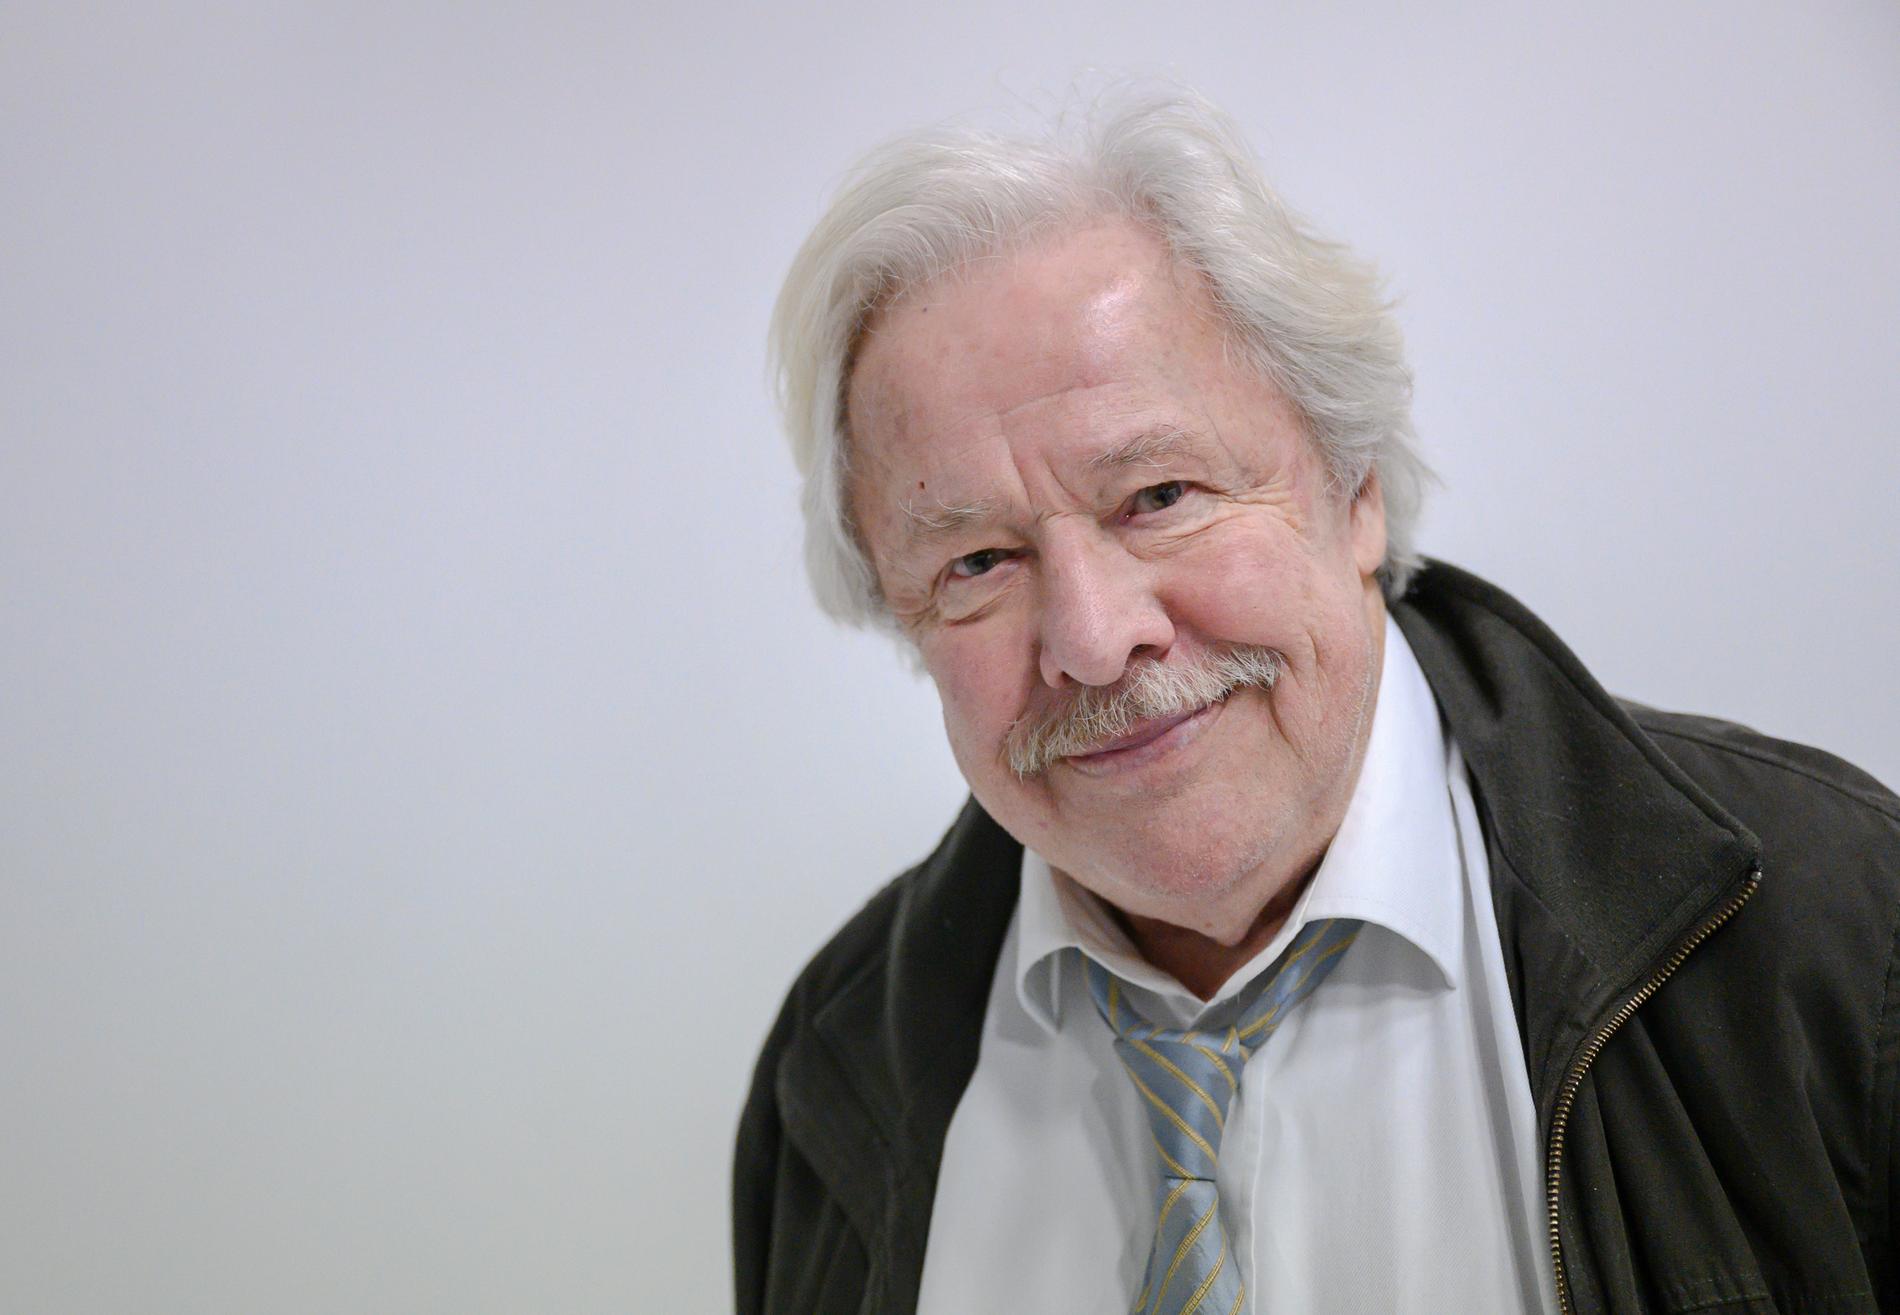 Sven Wollter under inspelningen av "Dag för dag" på hösten 2019. Ett år senare avled den folkkäre skådespelaren. Nu får filmen, där han bland annat spelar mot vännen Tomas von Brömssen, premiär.